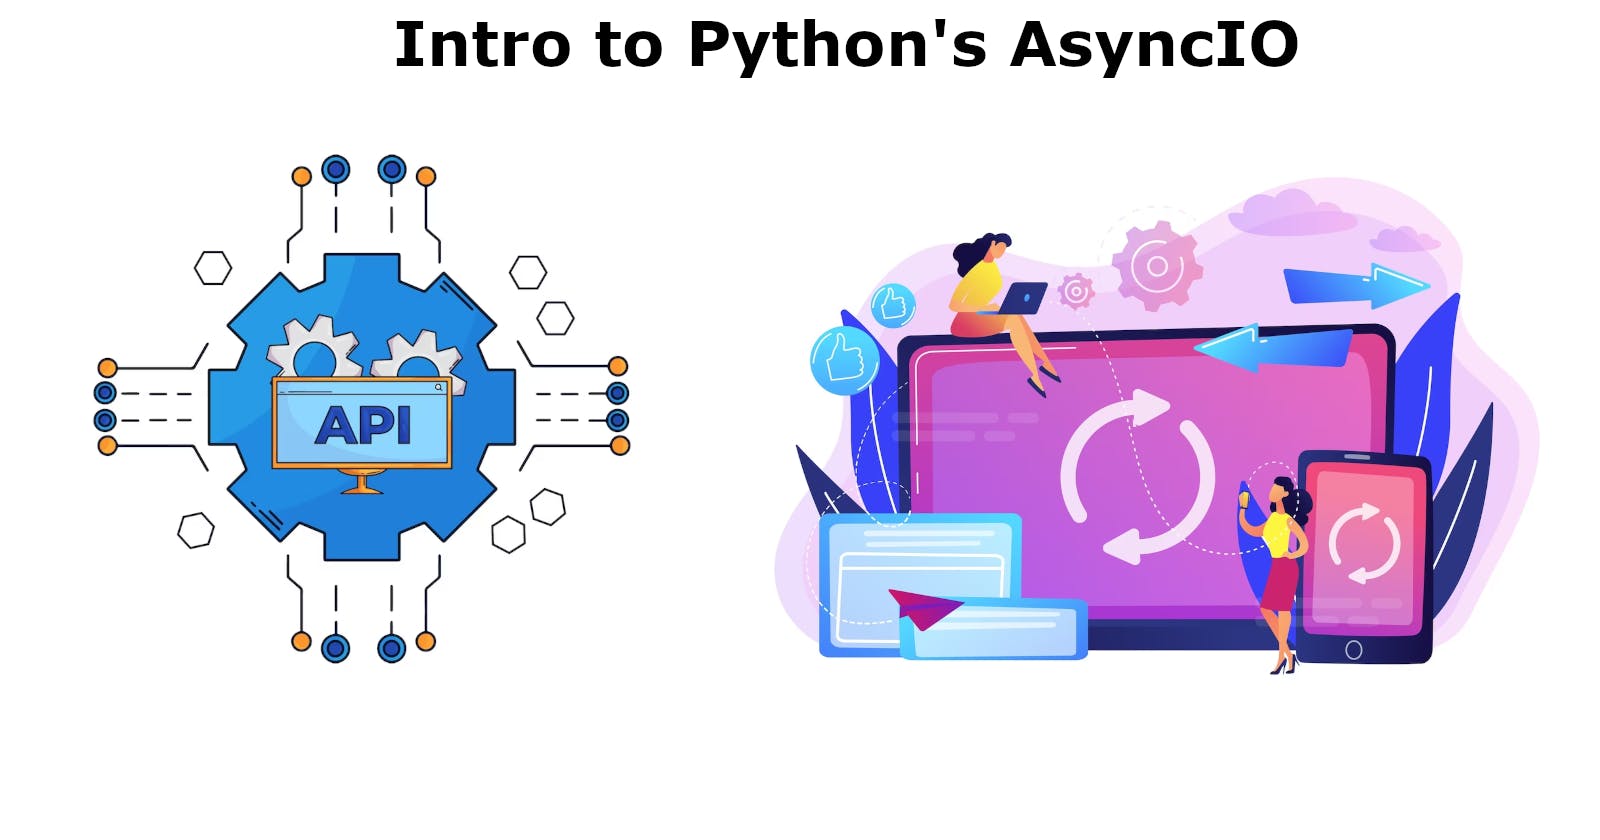 Python Async IO 101